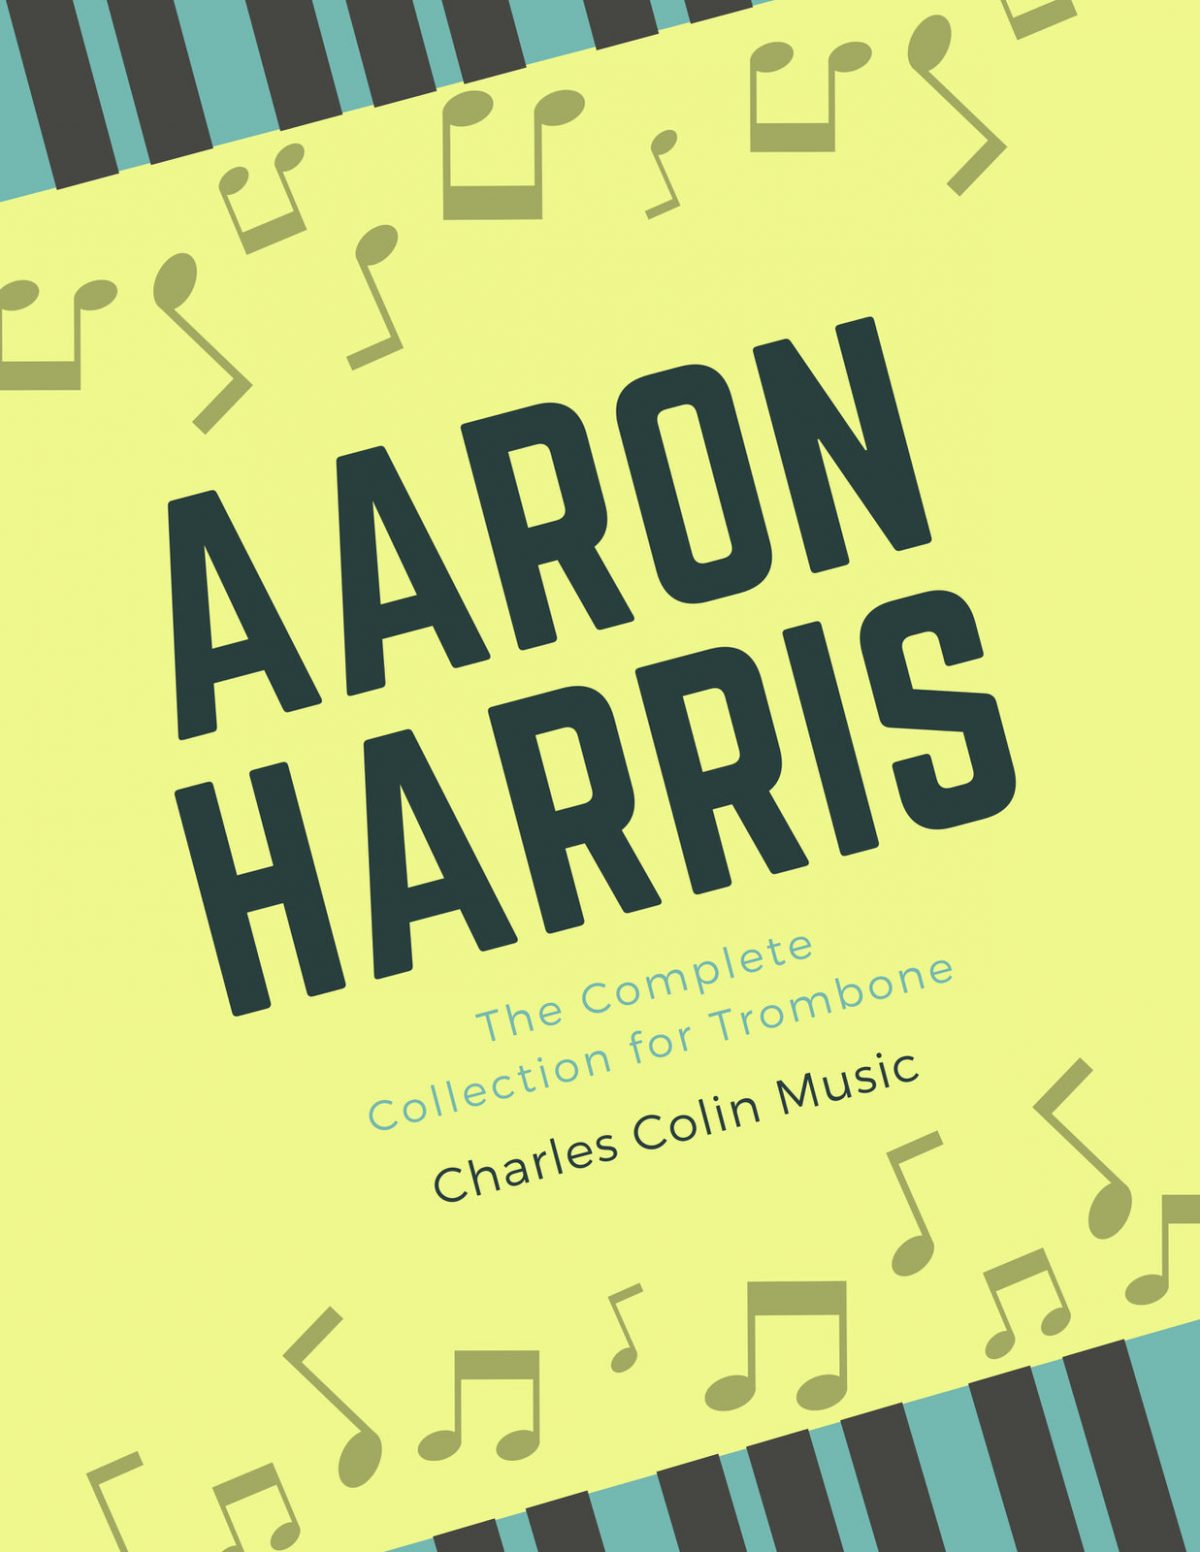 Complete Aaron Harris Trombone Collection